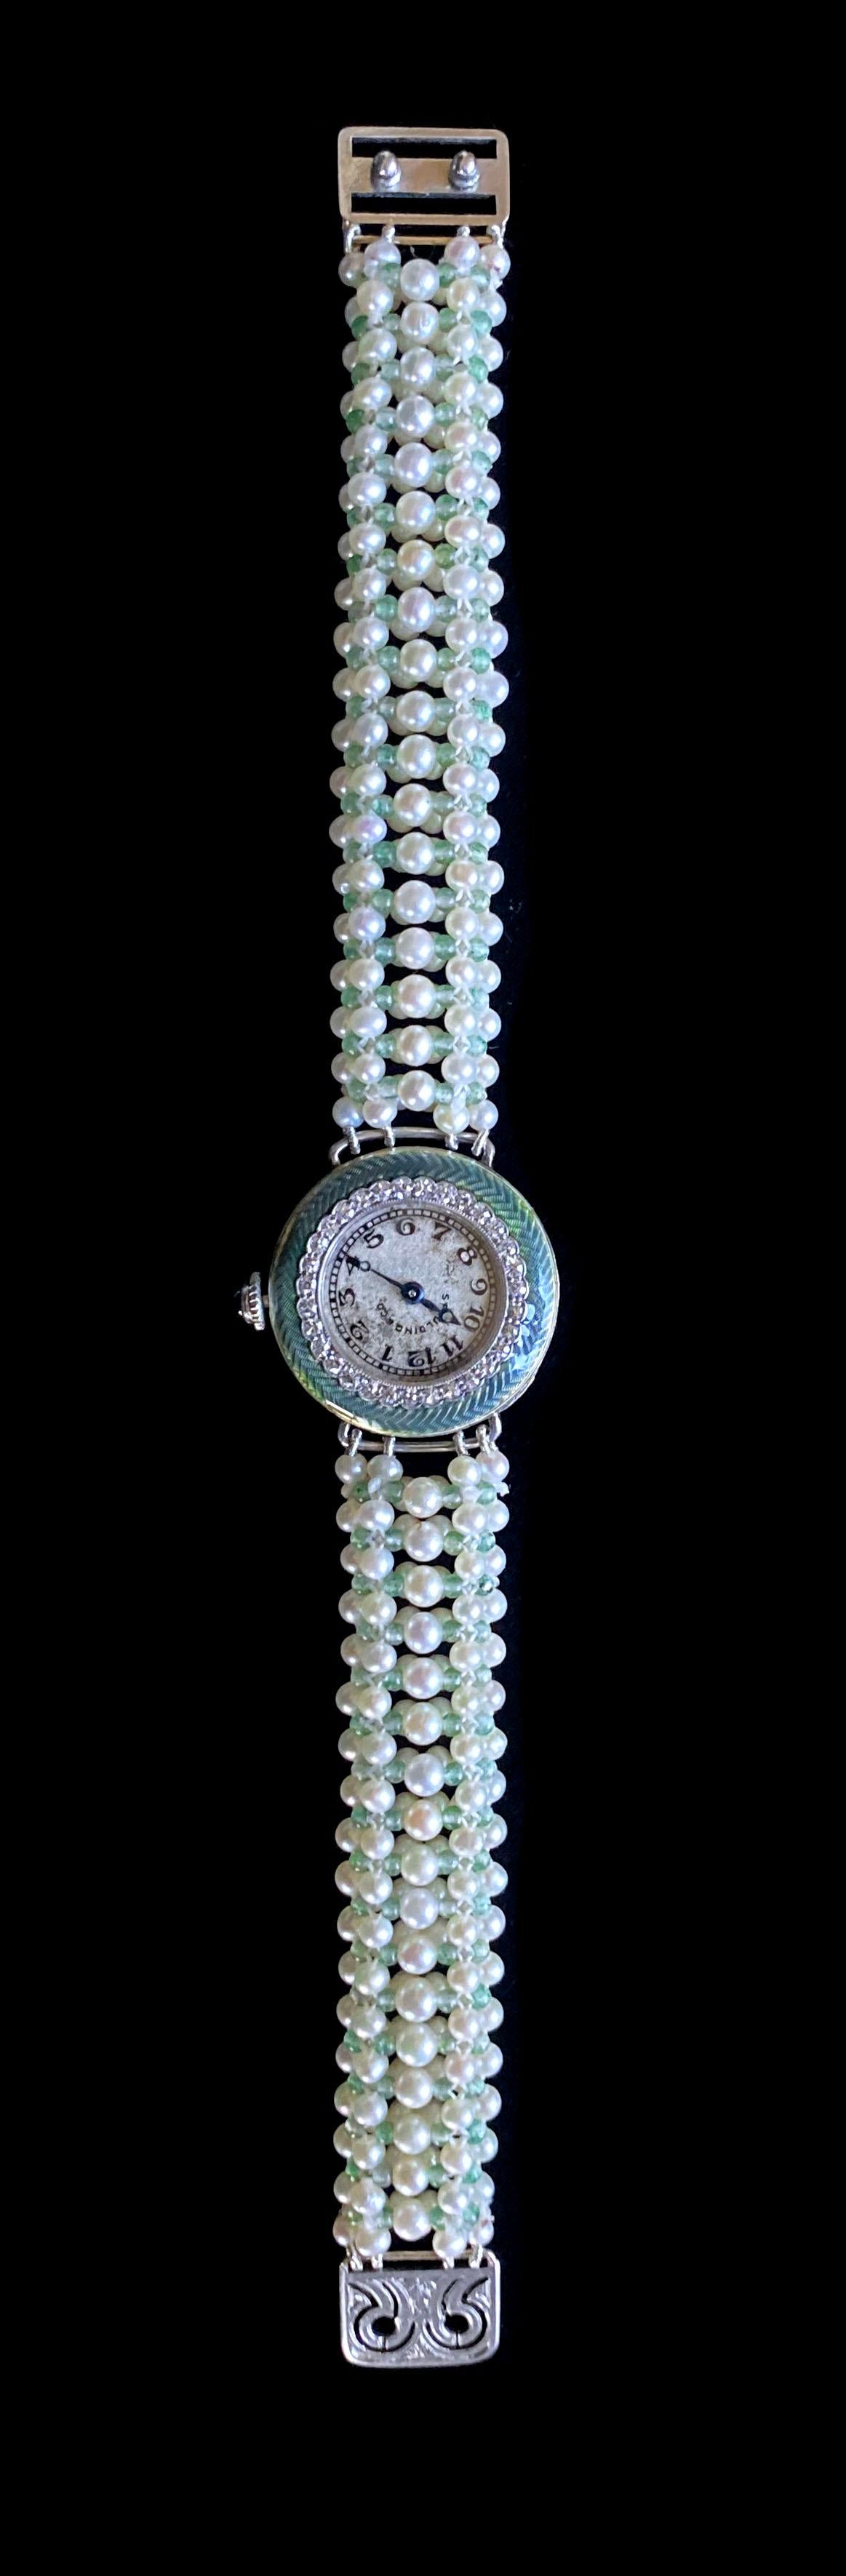 Gorgeous One of A Art Uhr von Marina J. Eine antike Diamond encrusted Edwardian Spaulding & Co Uhr mit grünen Emaille Details ist in einem atemberaubenden modernen Stück überarbeitet. Die Uhr ist ganz aus weißem Platin gefertigt und verfügt über ein